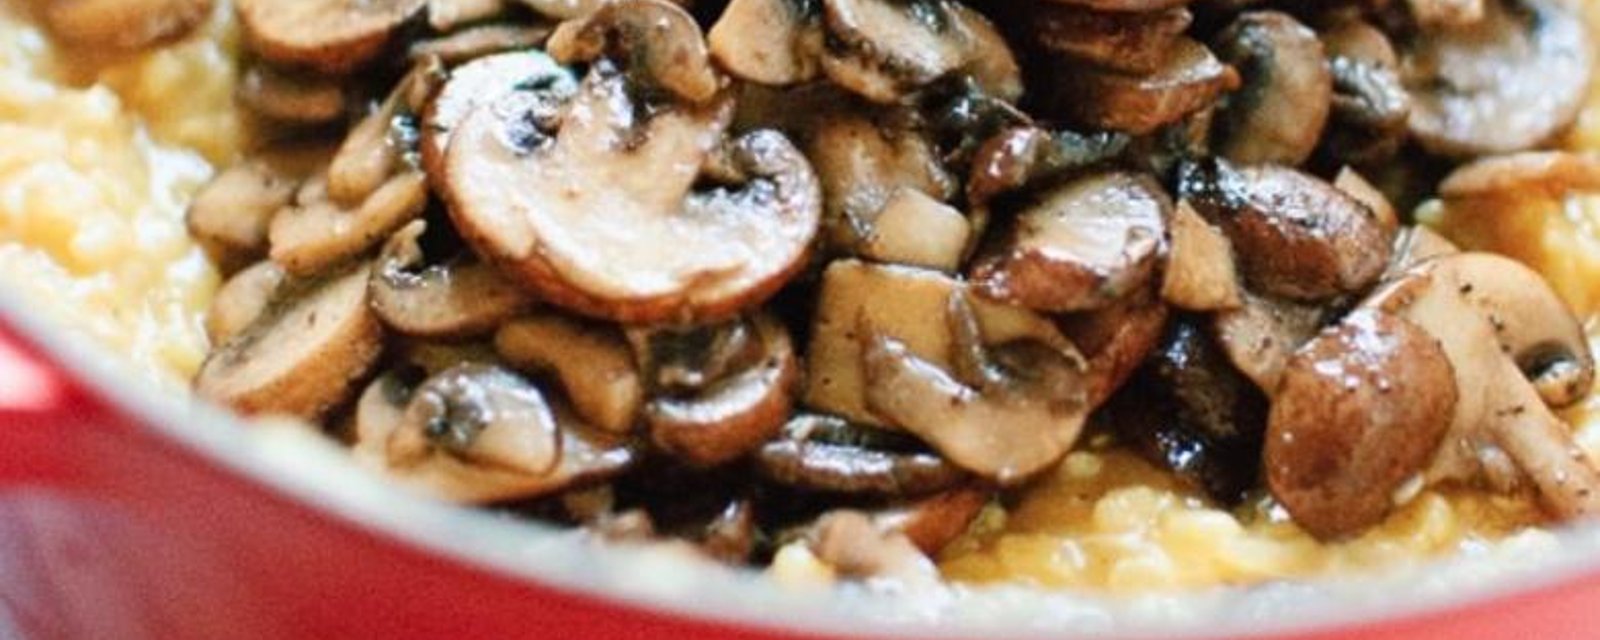 Recette: Le risotto aux champignons!